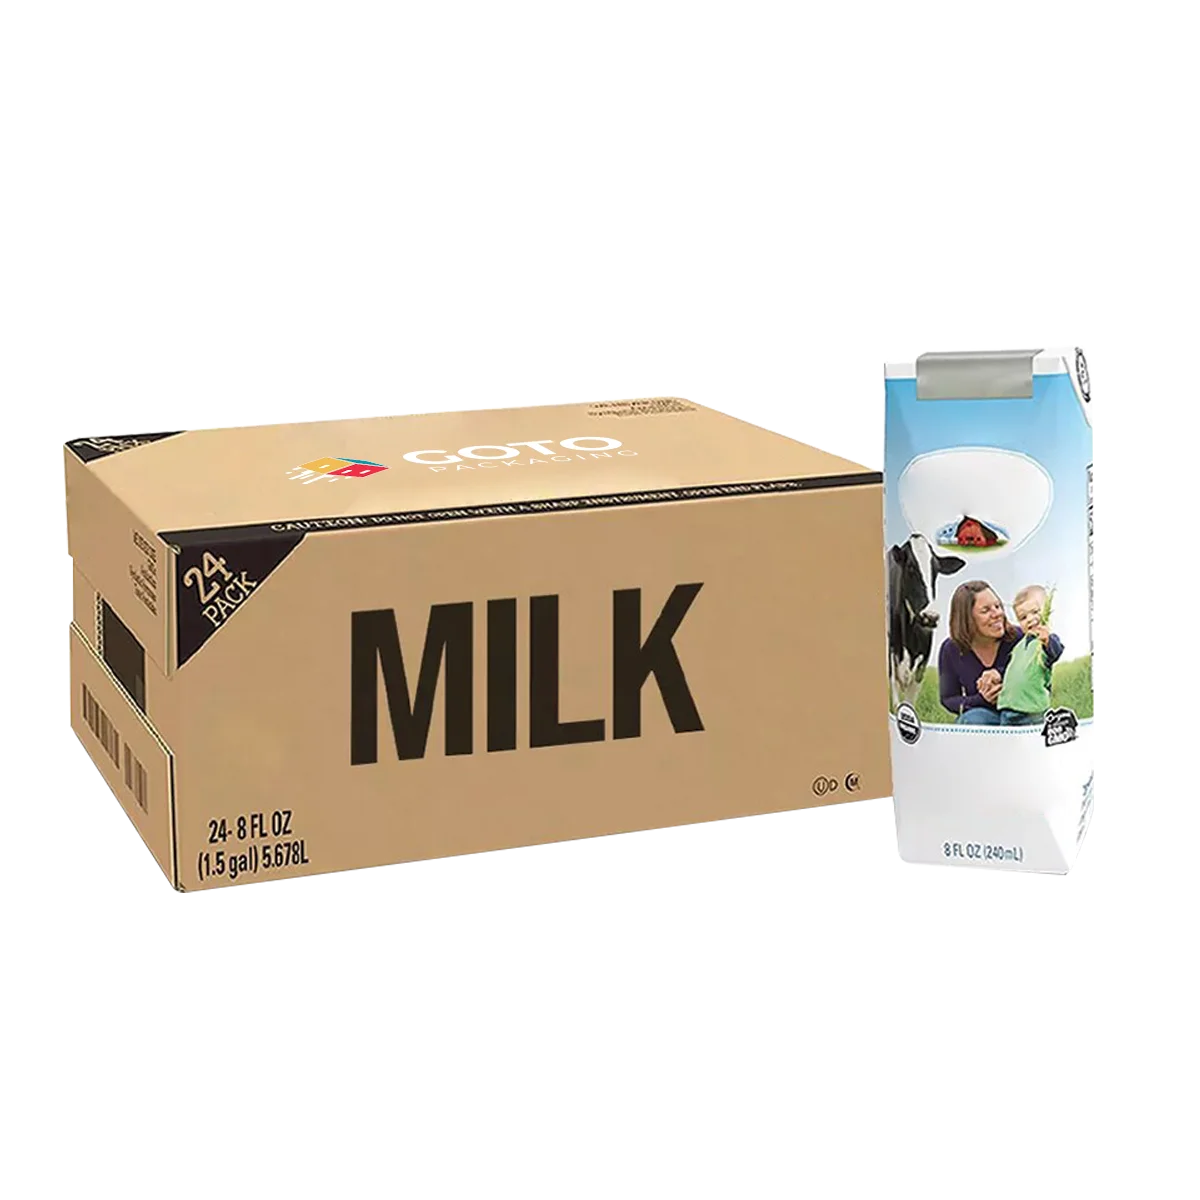 Milk-Carton-Boxes-Feature